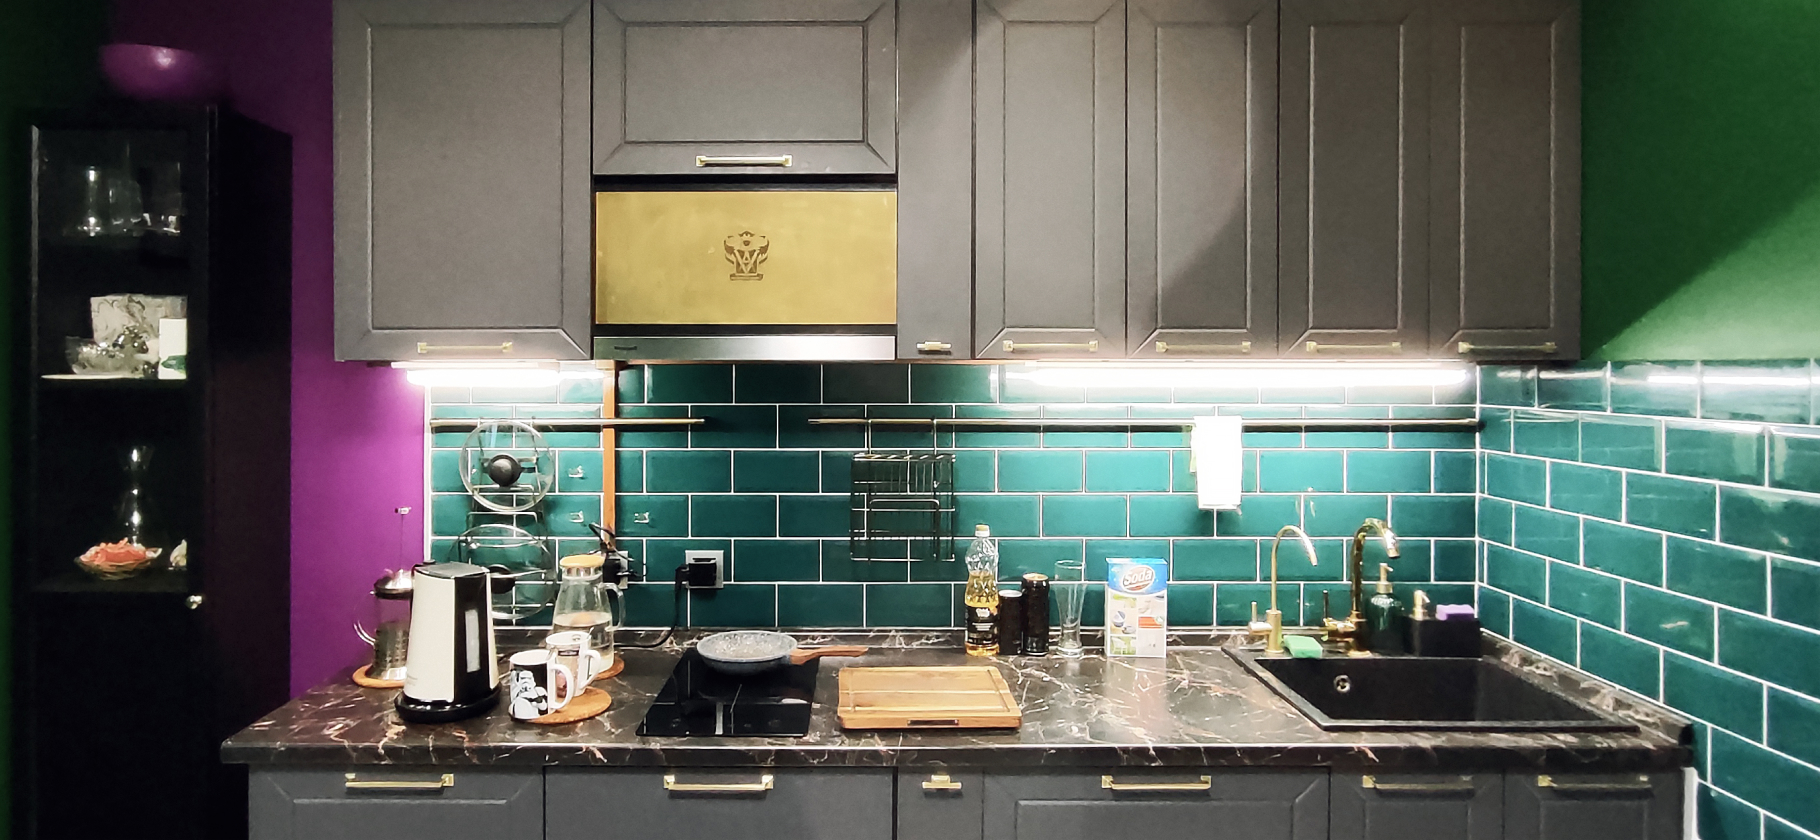 «Утром яркие цвета бодрят»: как я сделал кухню в стиле английской гостиной